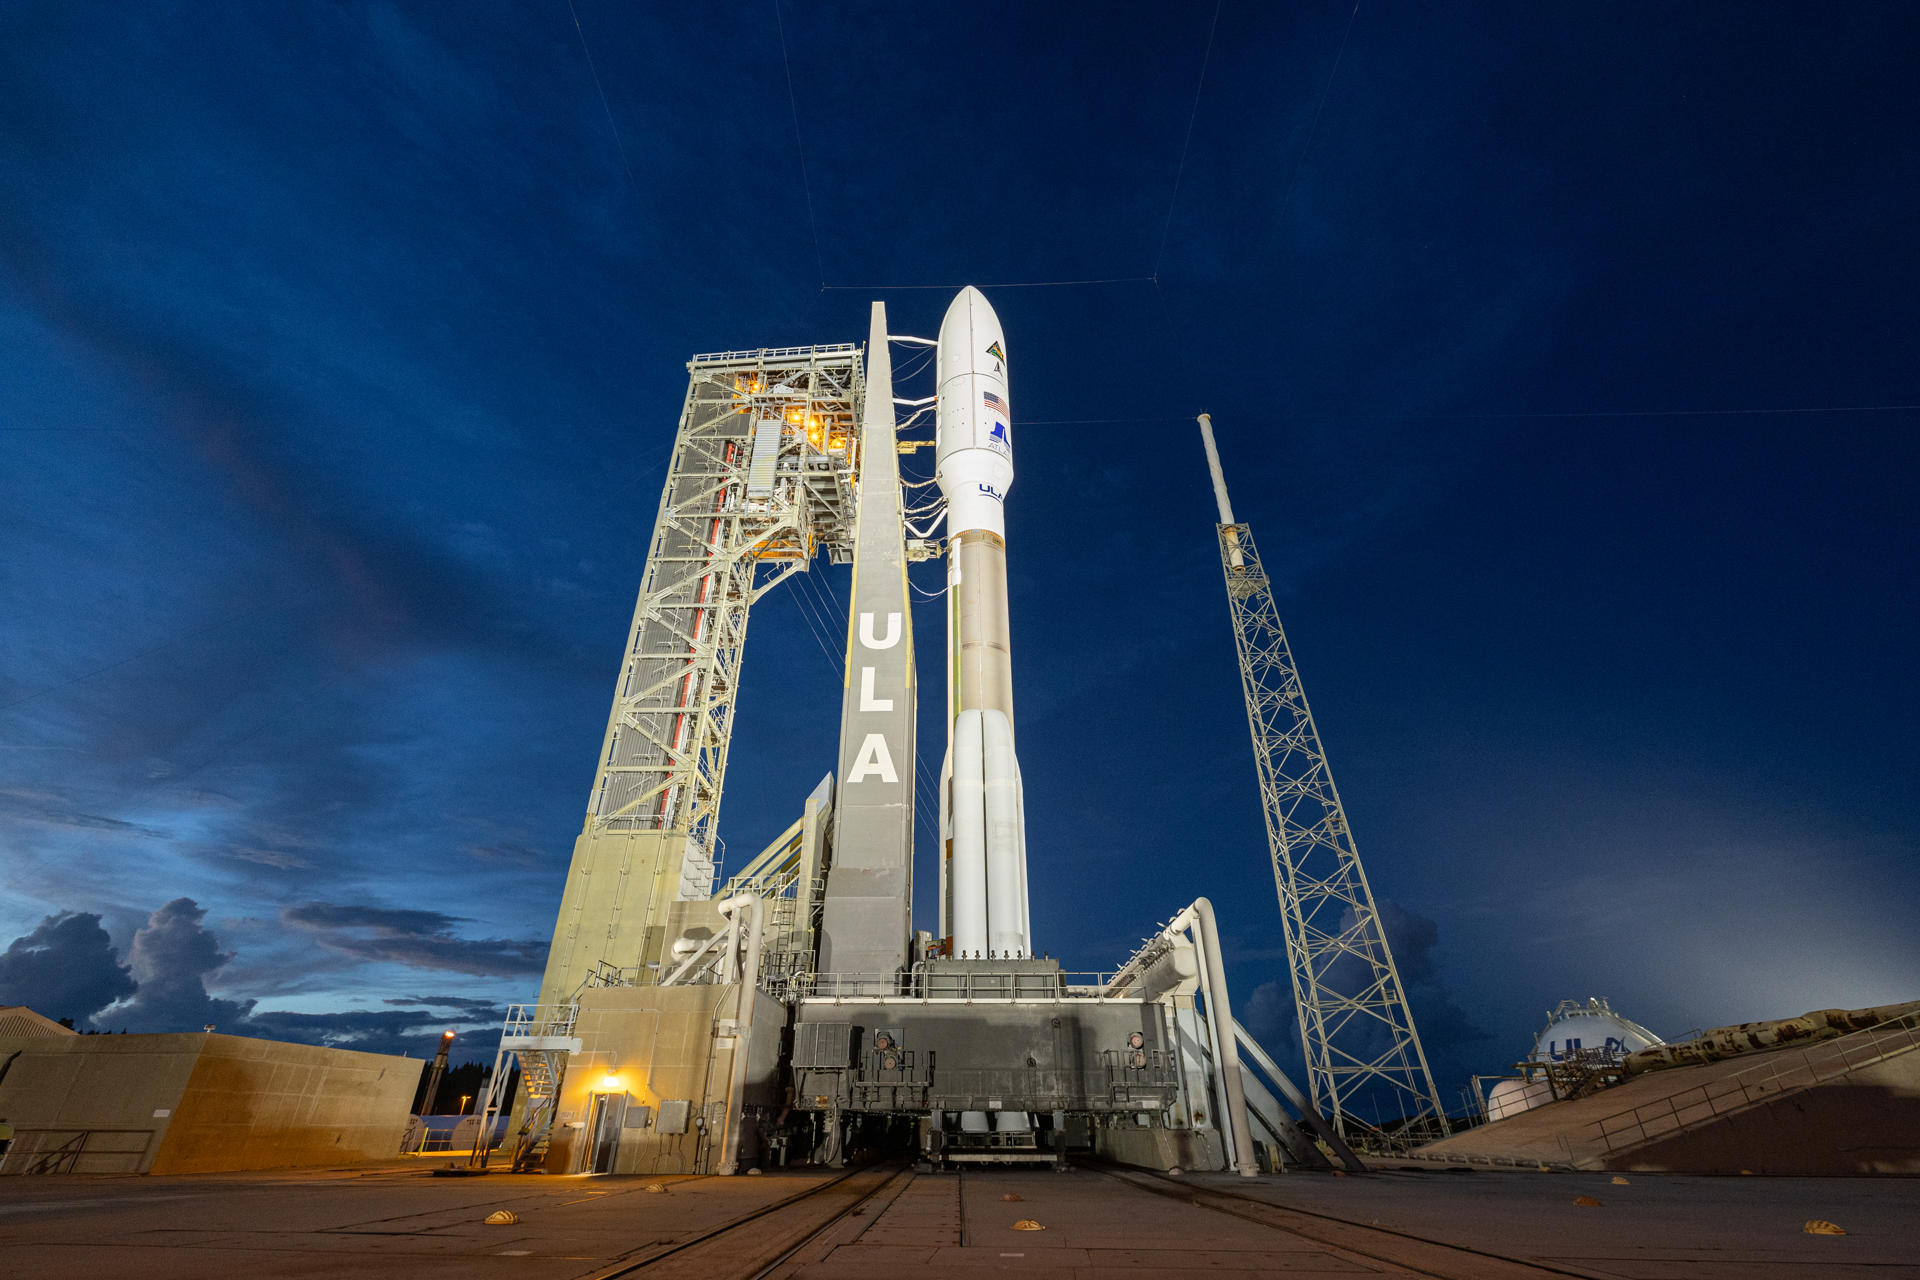 Idalia cancela el lanzamiento de satélites de vigilancia de la misión secreta de EE. UU.